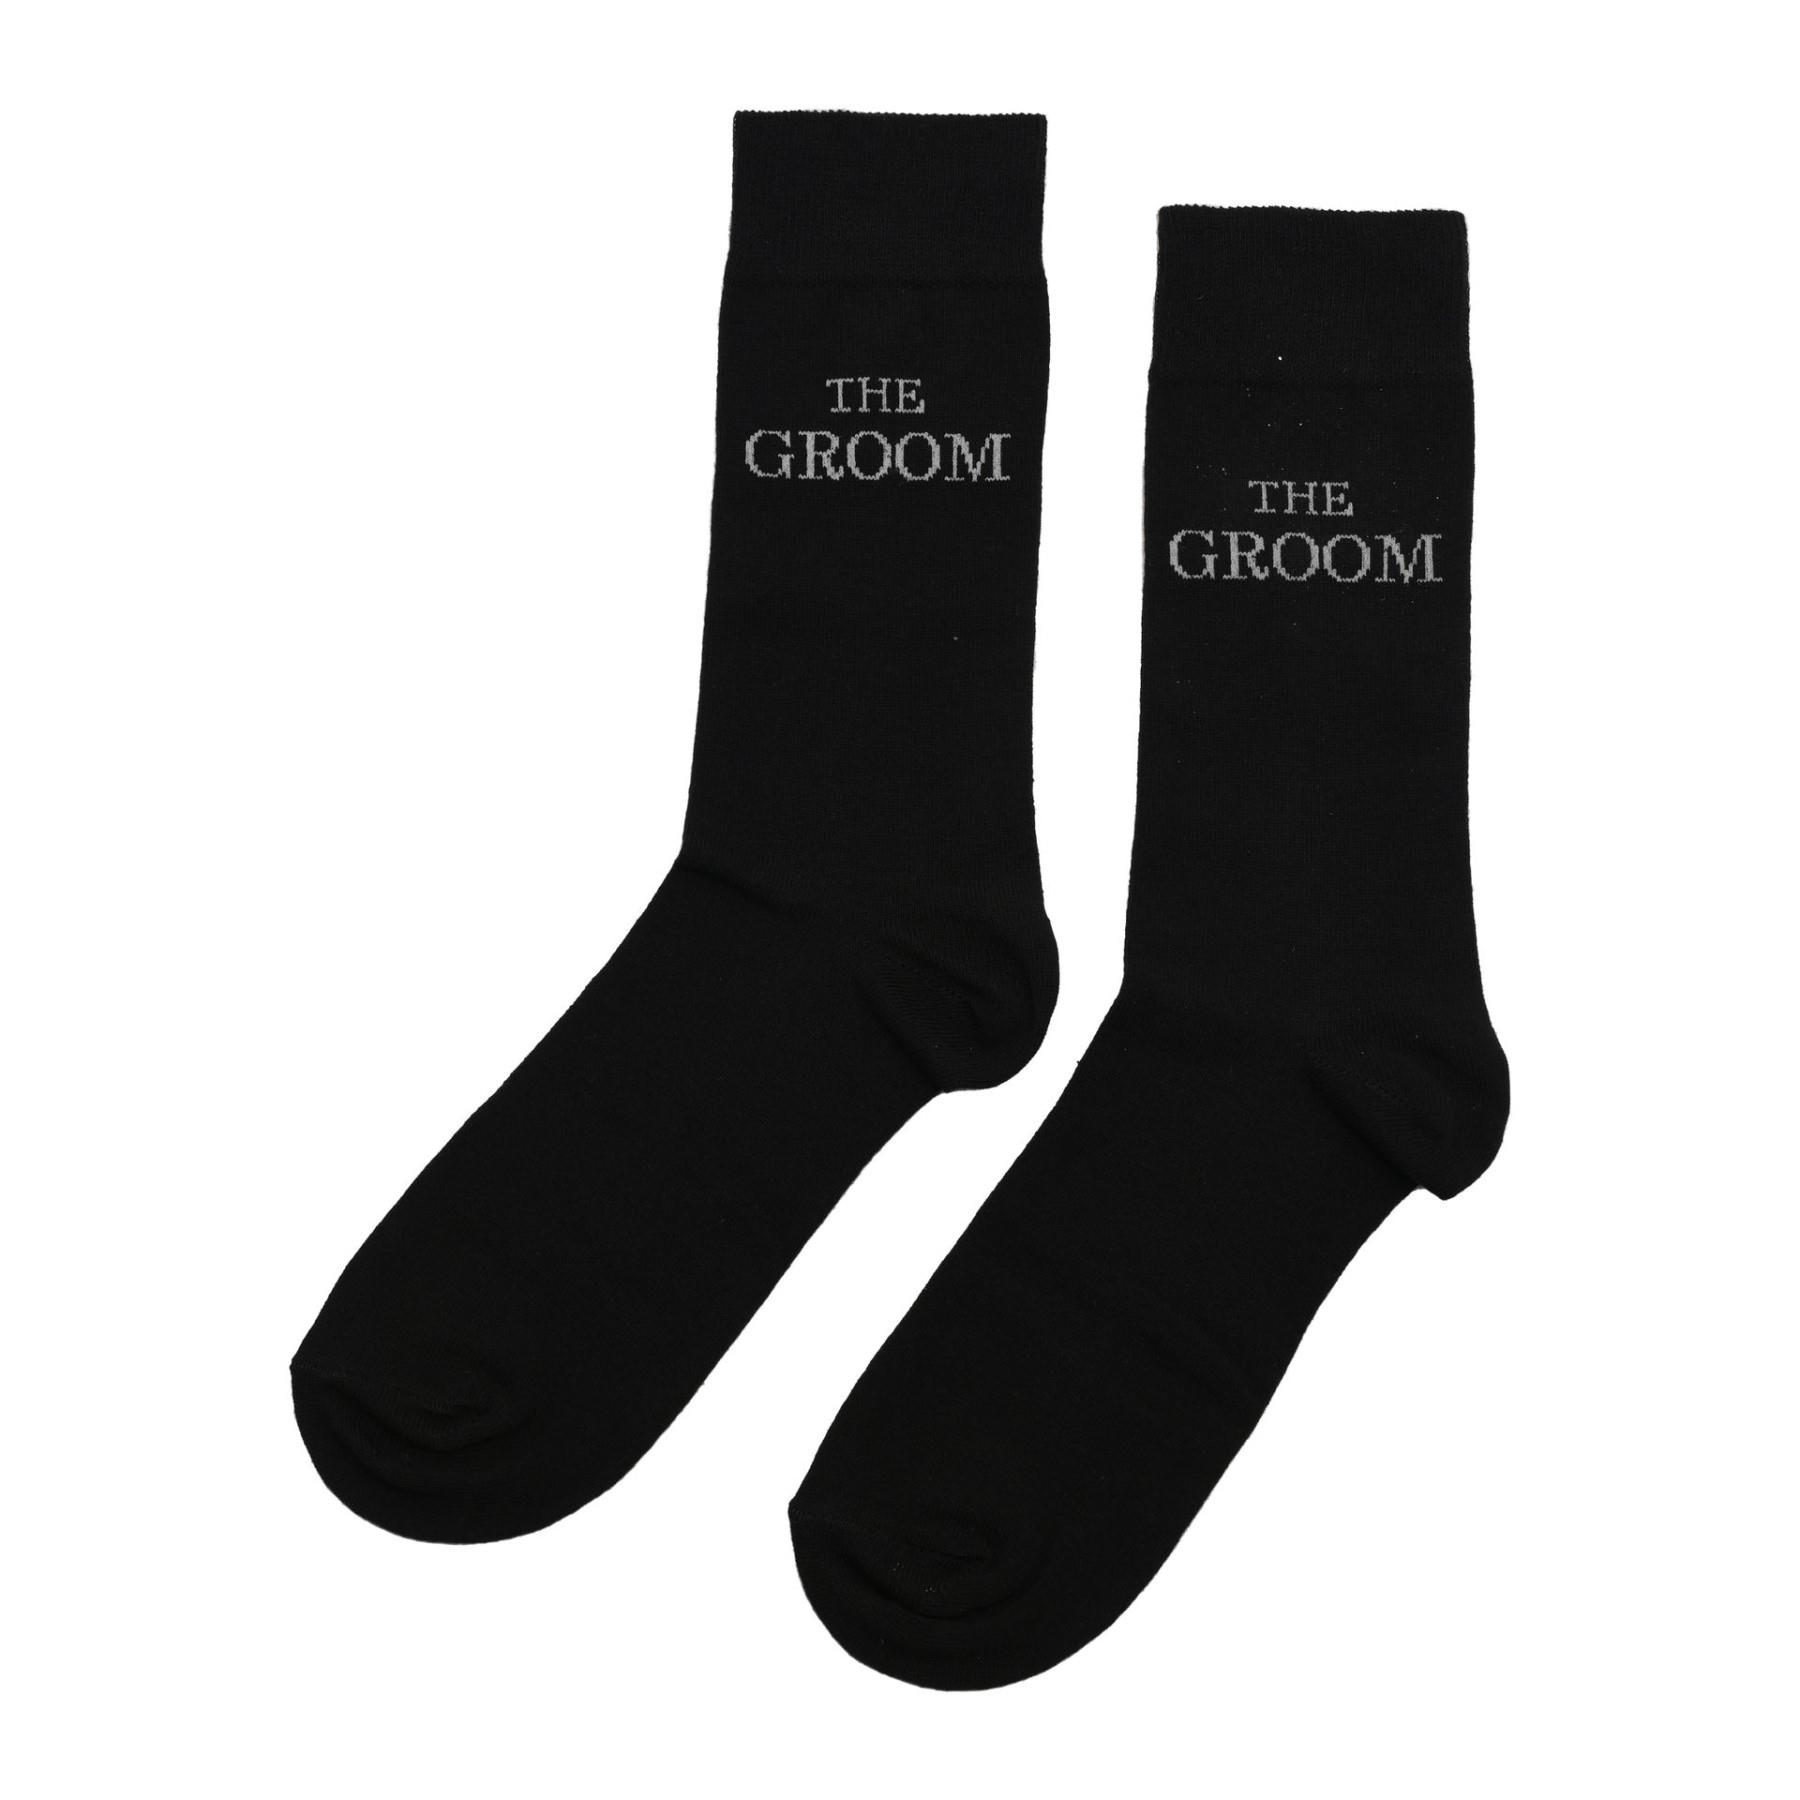 Men's Black Socks Wedding Gift - The Groom